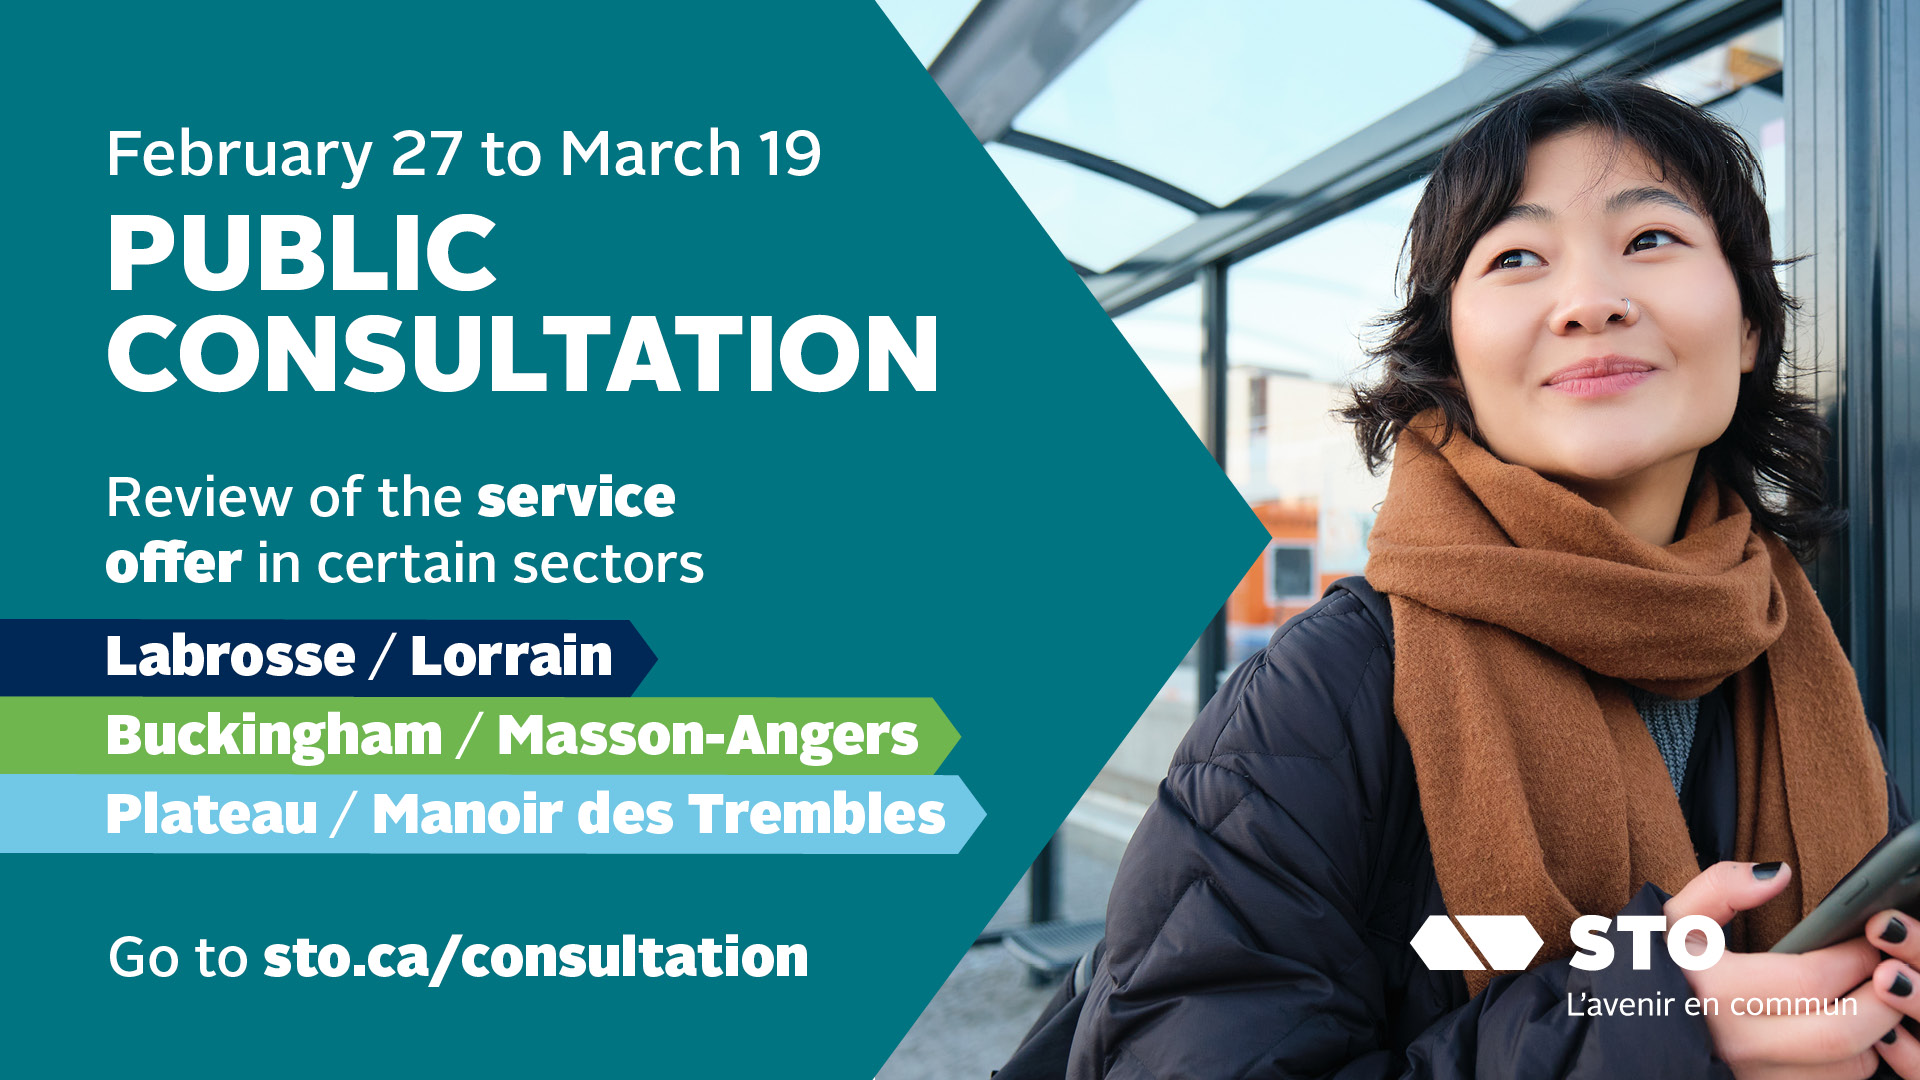 Public consultation until March 19